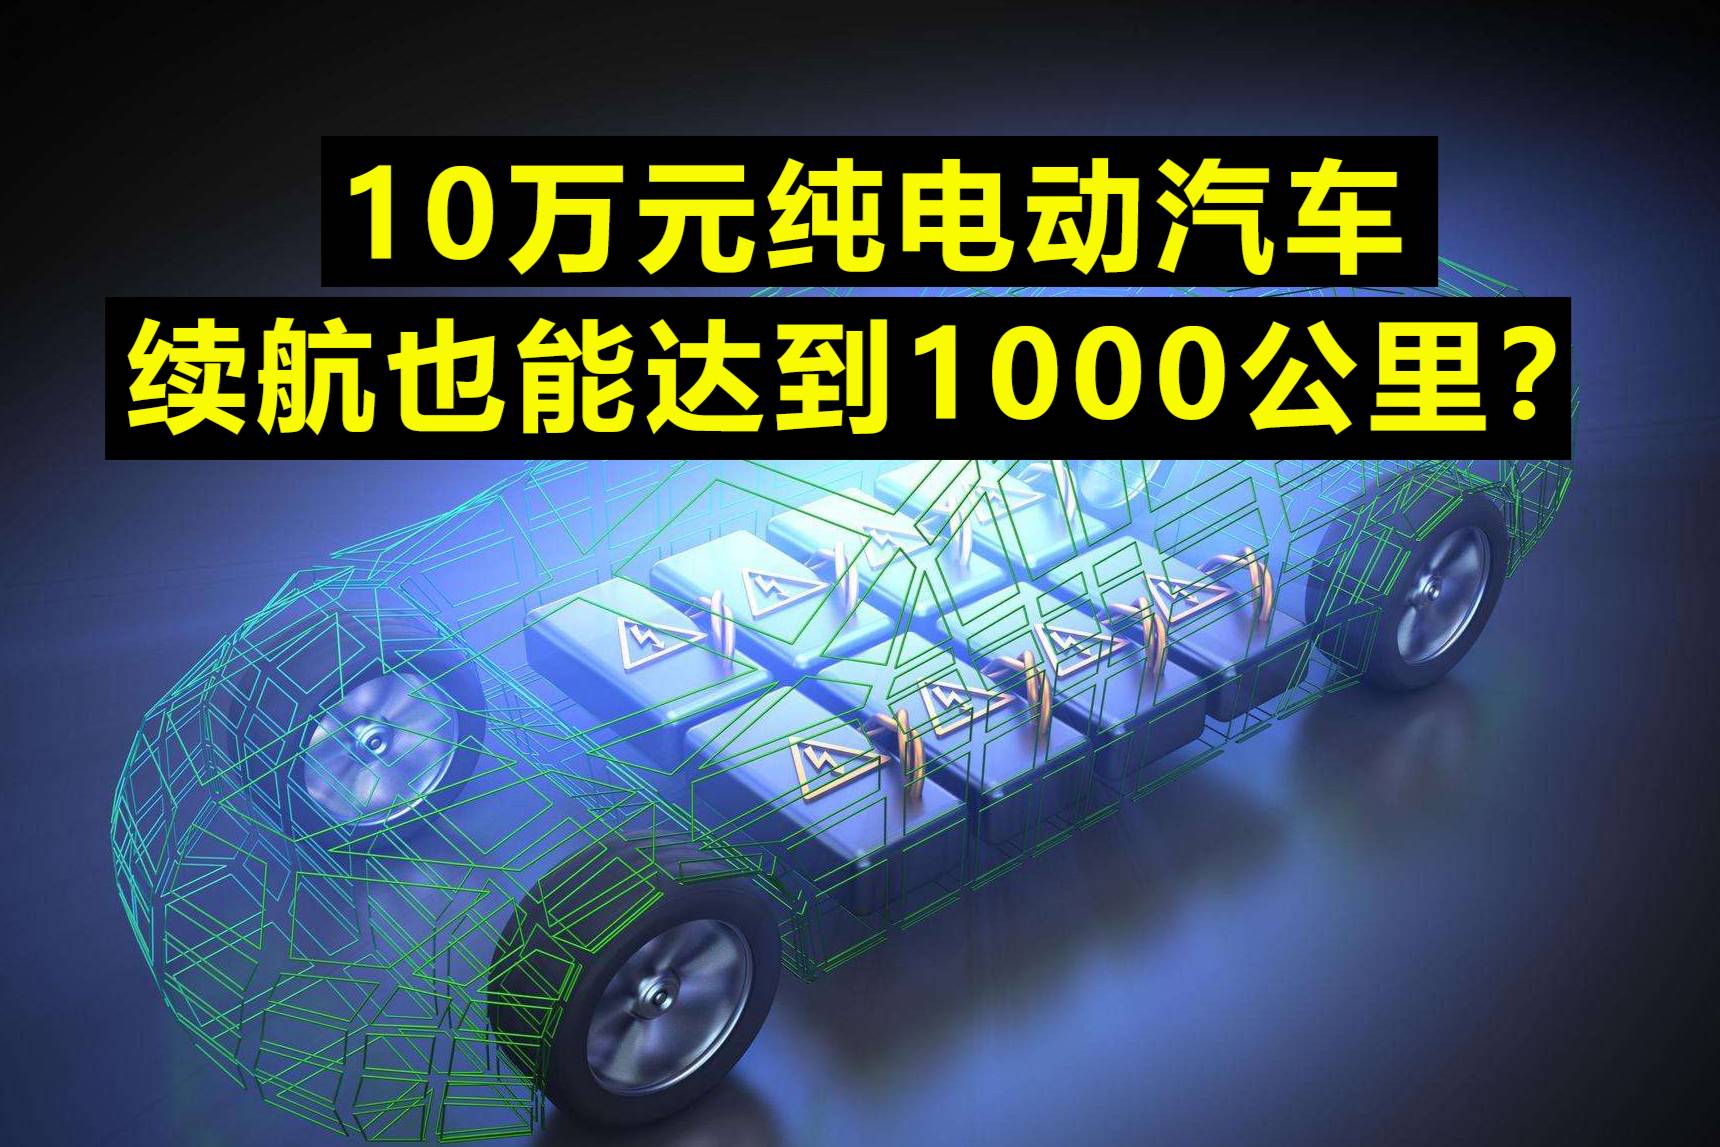 10万元纯电动汽车，续航里程也能达到1000公里？